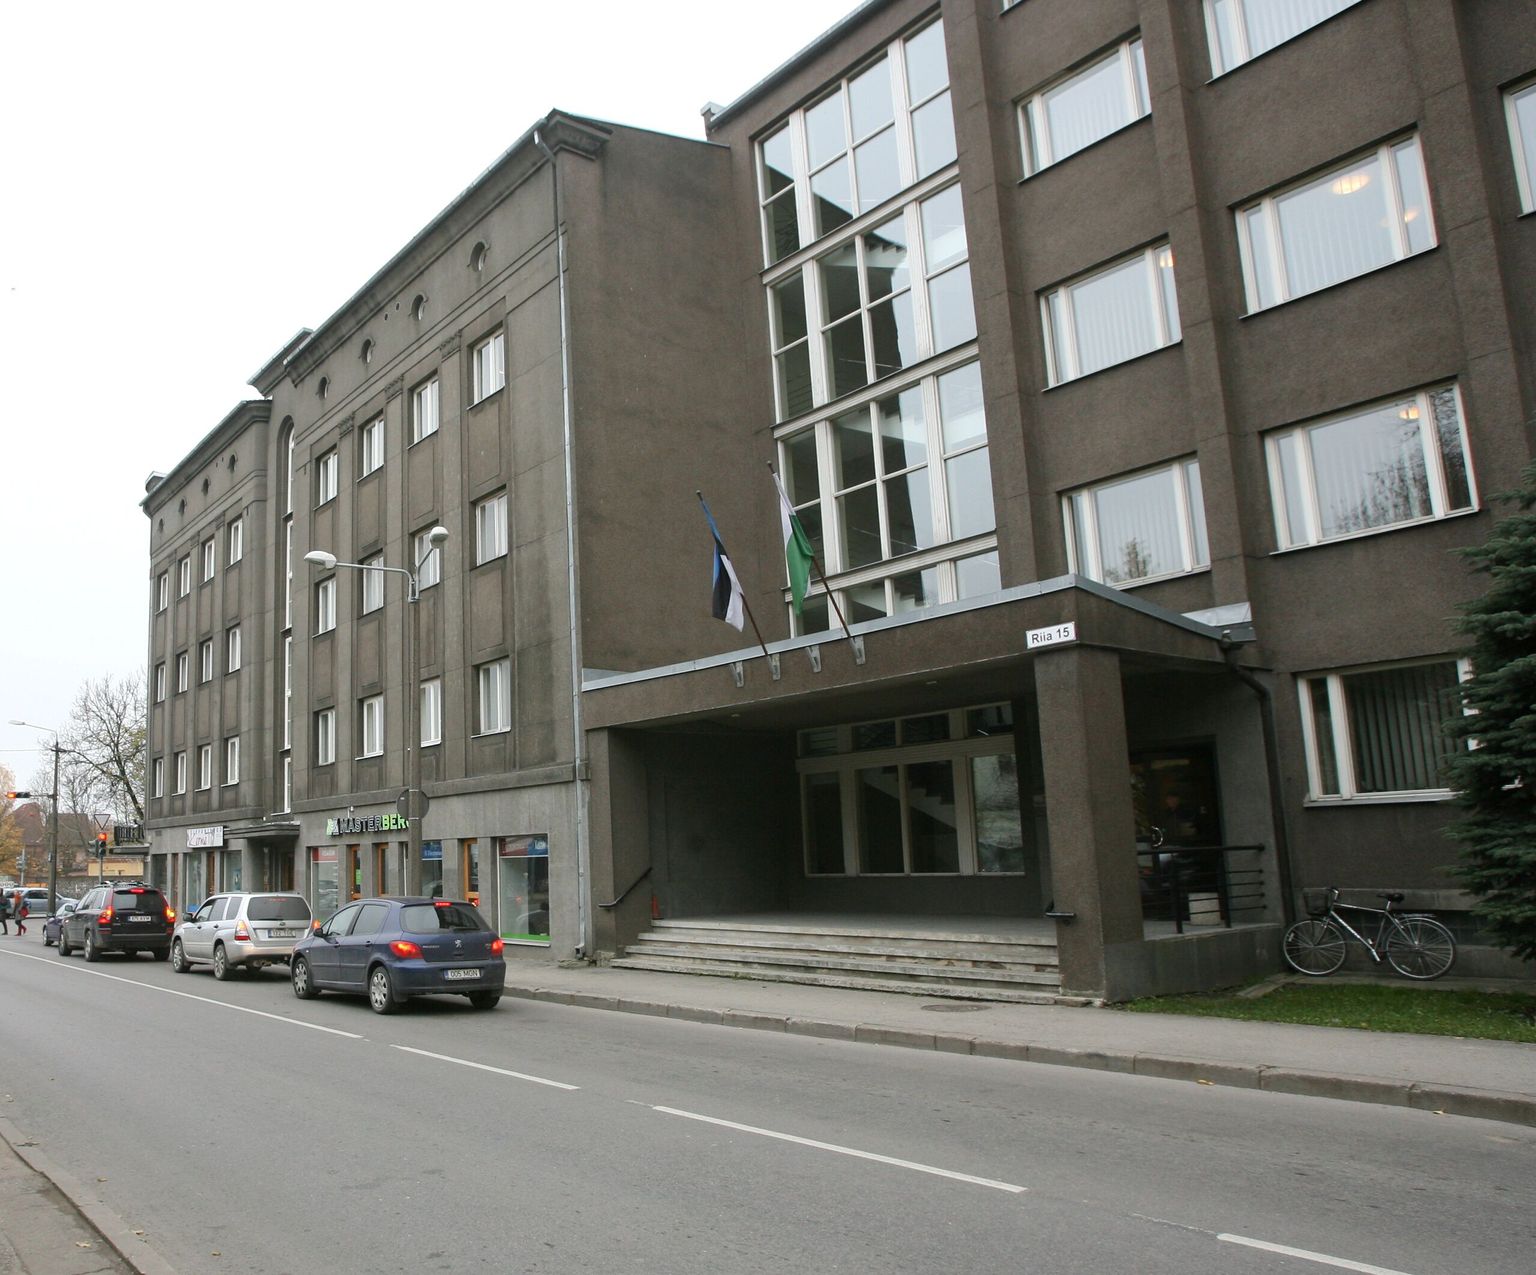 Tartu maavalitsus korraldas 13 omavalitsuses rahvaküsitluse, et teada saada elanike arvamus valdade-linnade sundliitmise kohta.